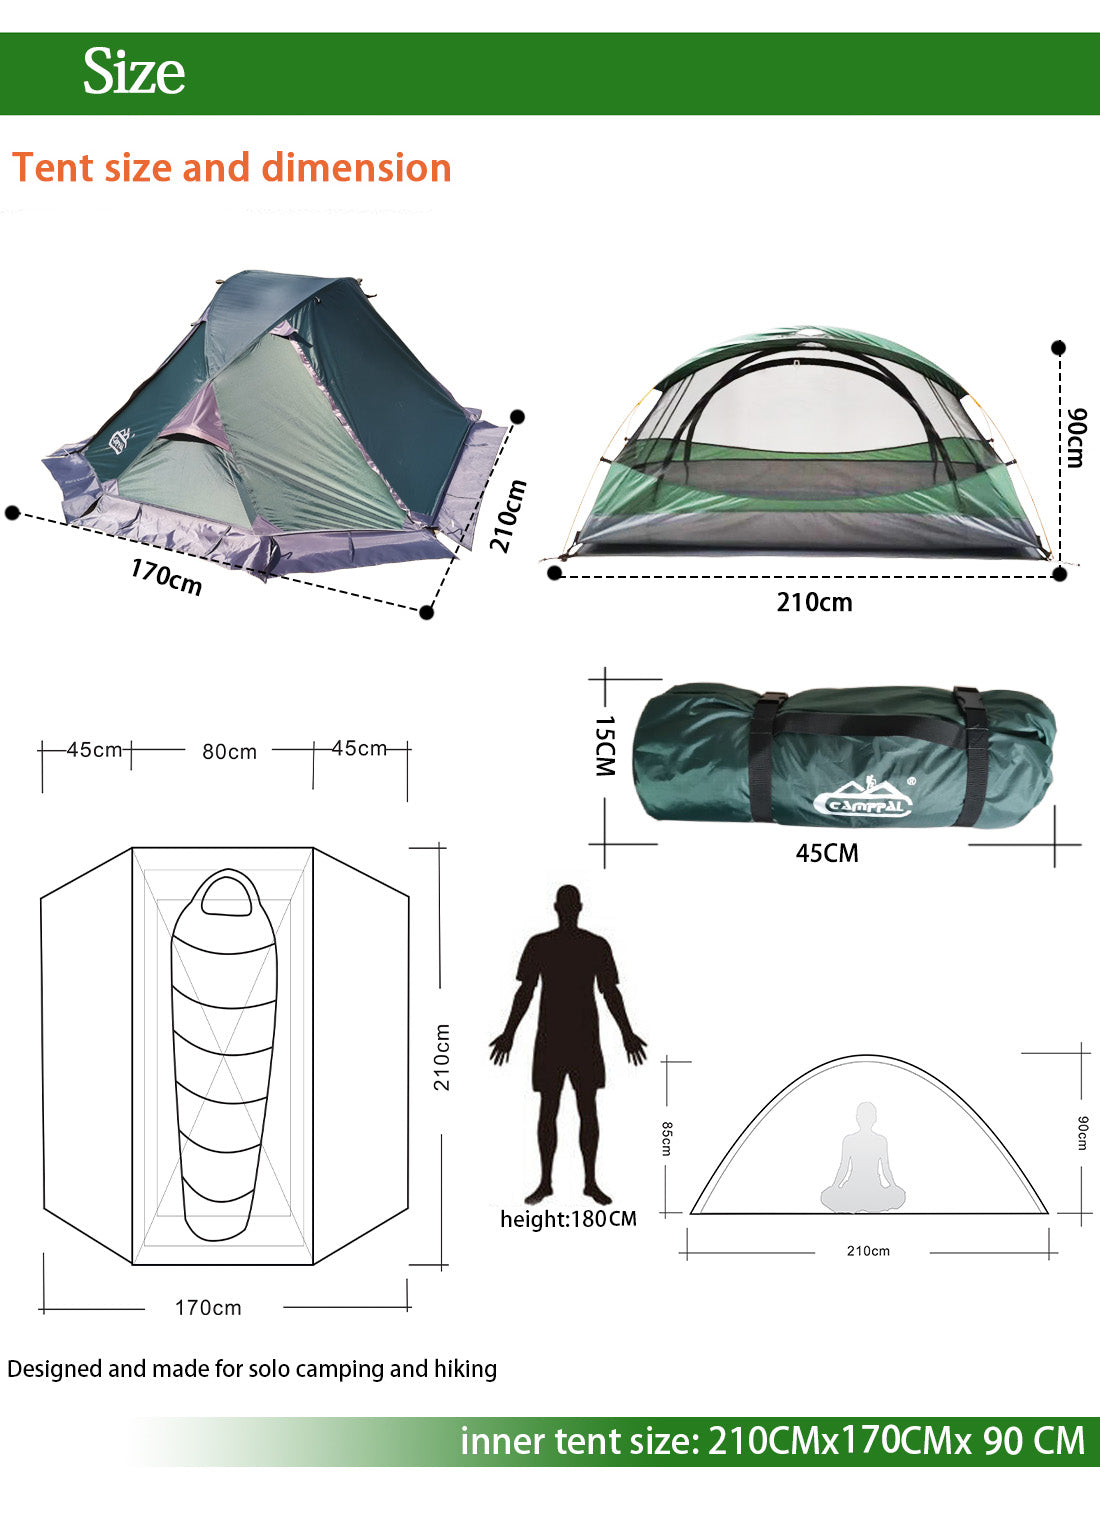 Camppal Professional One Person 4 Seasons Tente de randonnée légère avec eau/pluie/vent/tempête/neige, idéale pour le camping en solo, la randonnée, le trekking